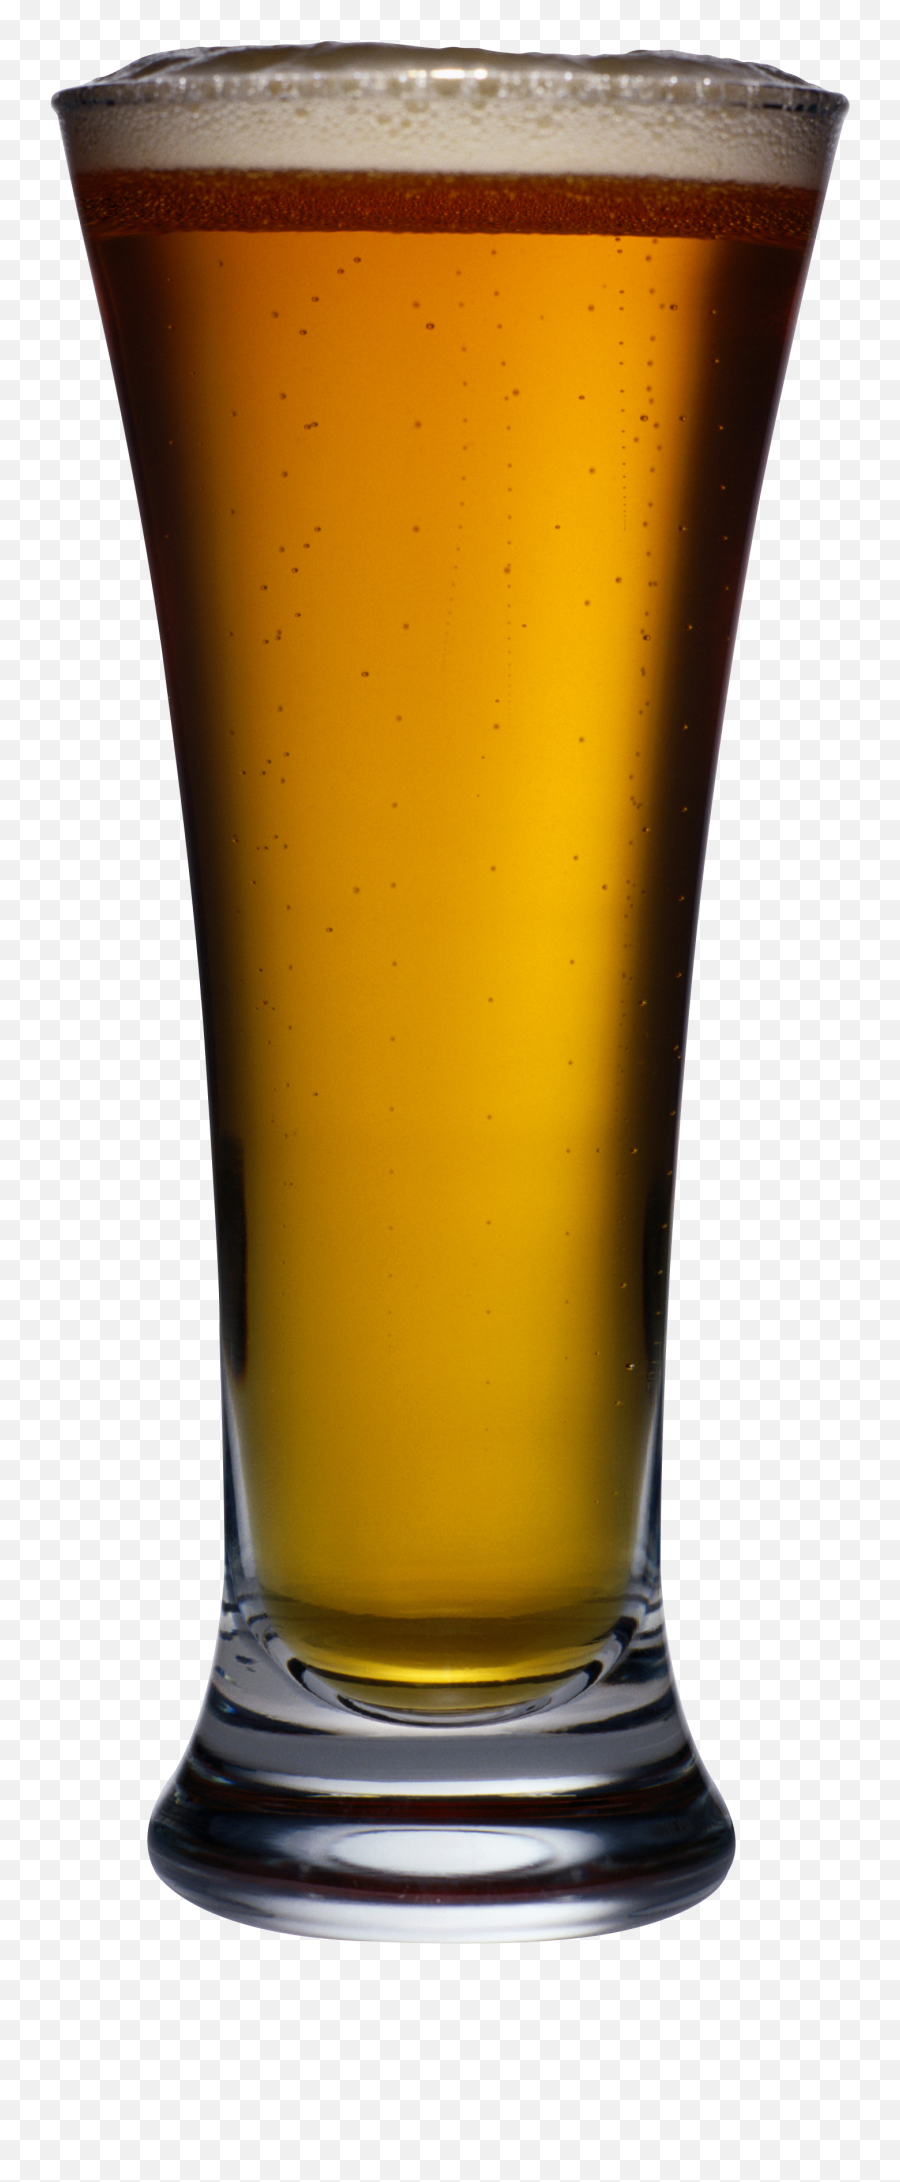 Download Beer In Mug Png Image For Free - Transparent Beer Glass,Beer Transparent Background